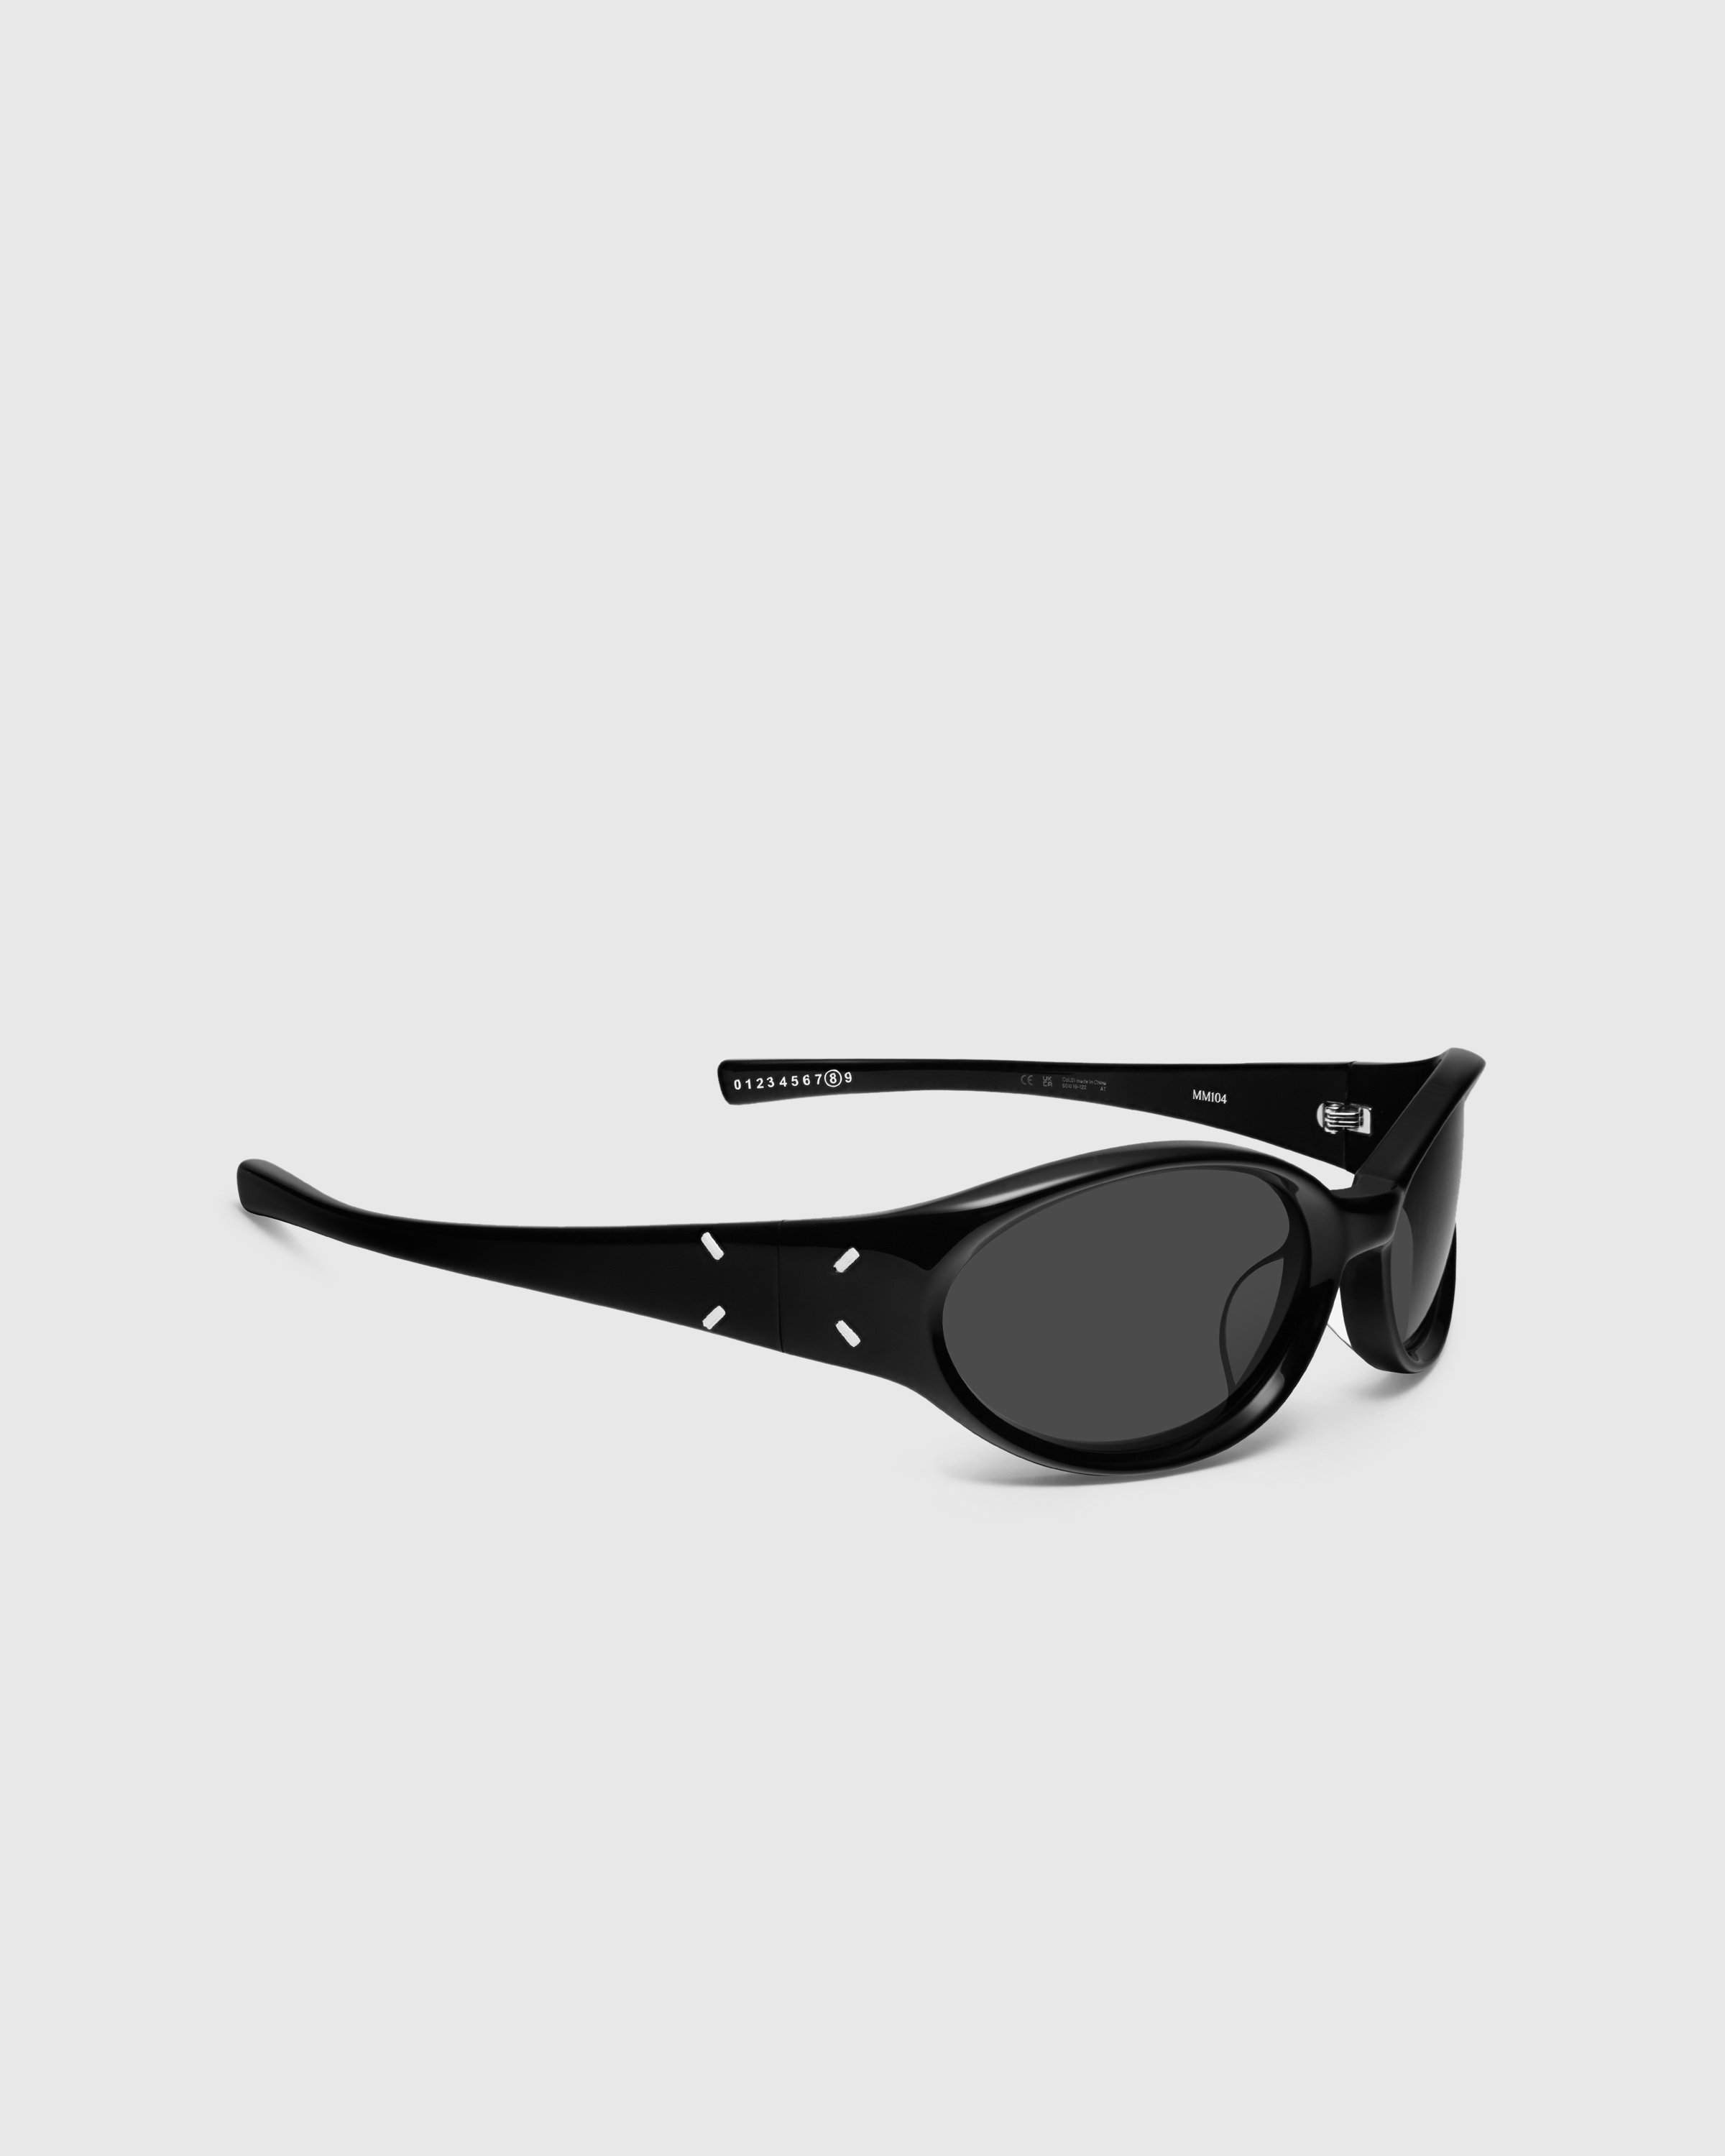 Maison Margiela x Gentle Monster - Sunglasses MM104-01 - Accessories - Black - Image 2